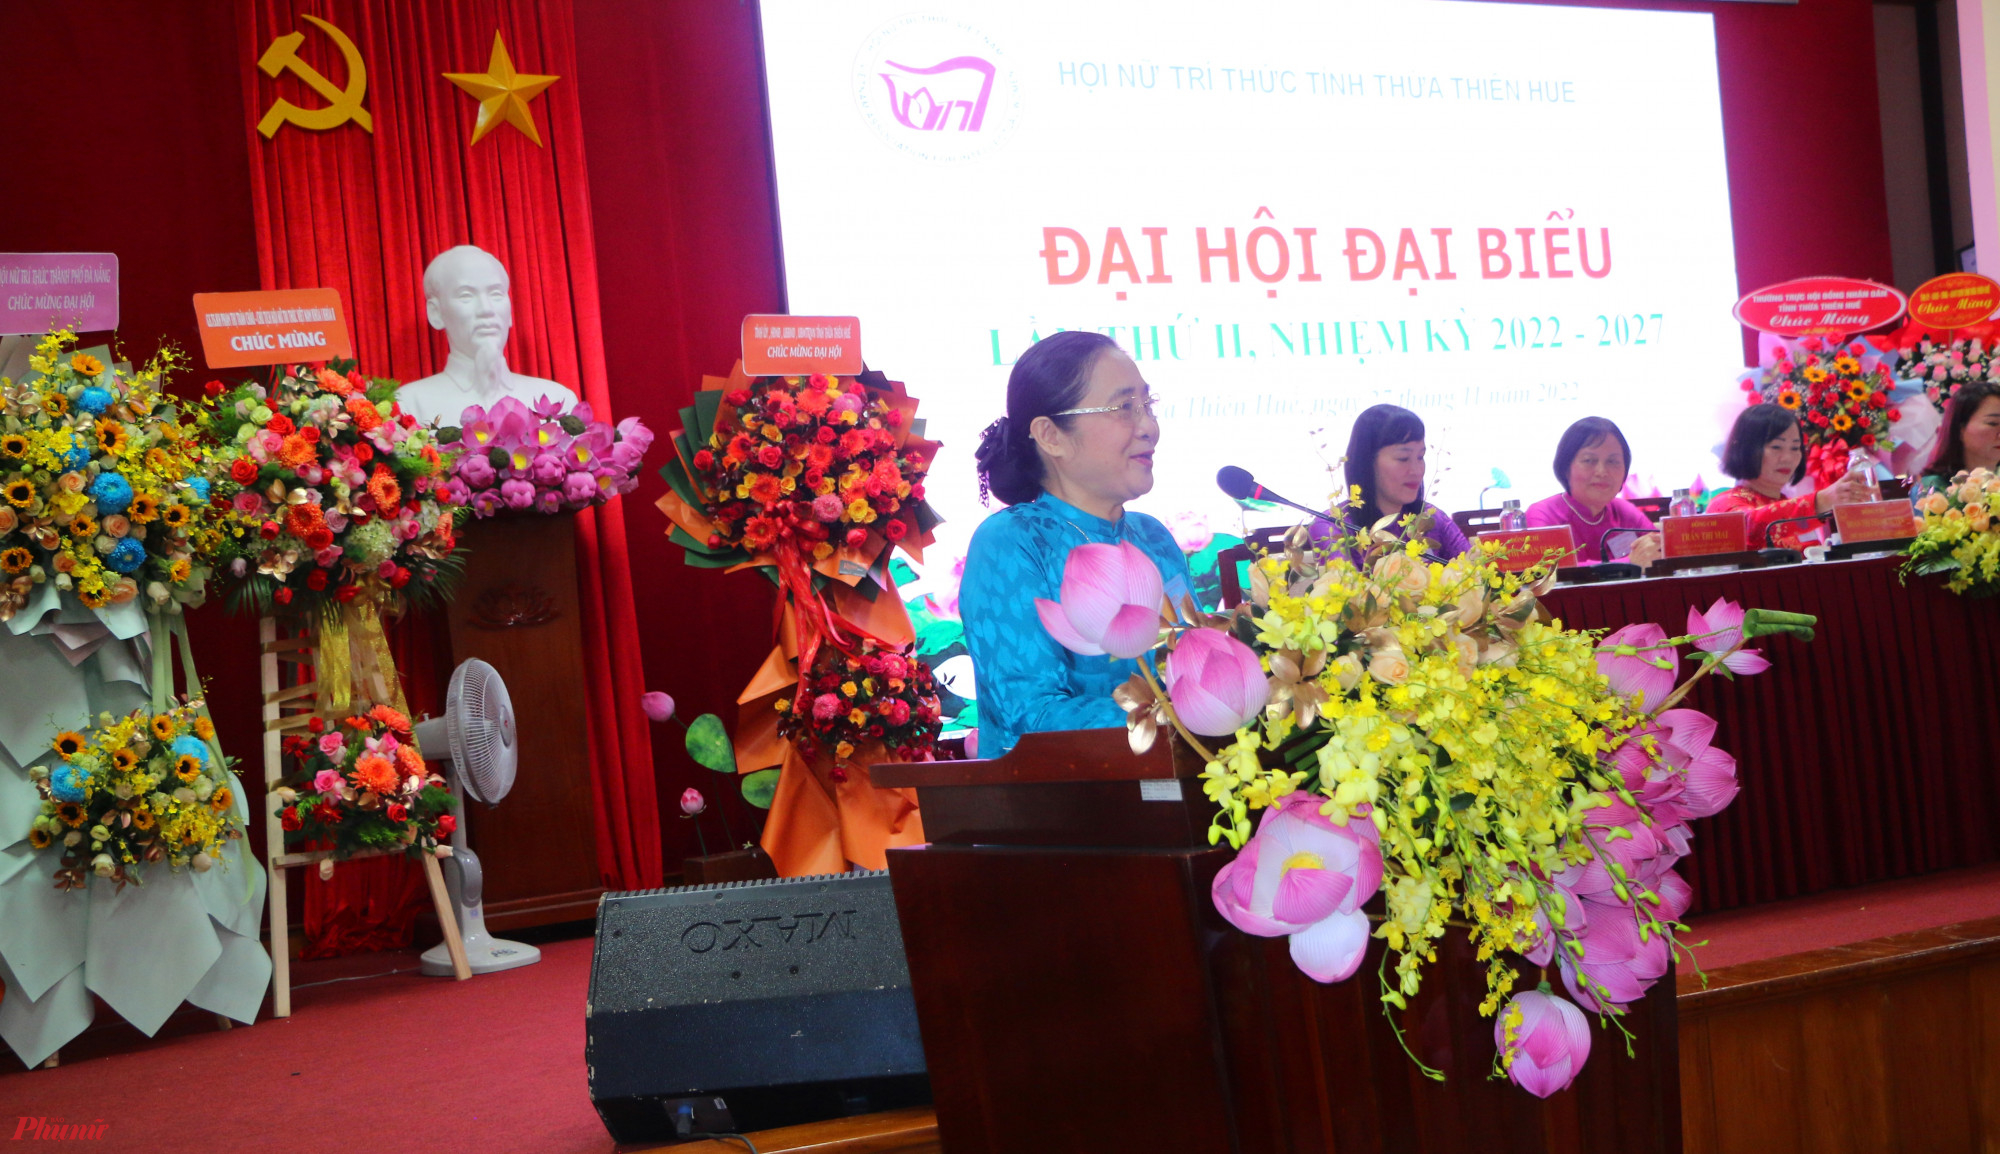 Bà Hoàng Thị Ái Nhiên phó chủ tịch Hội NTT Việt Nam phát biểu chri đạo đại hội